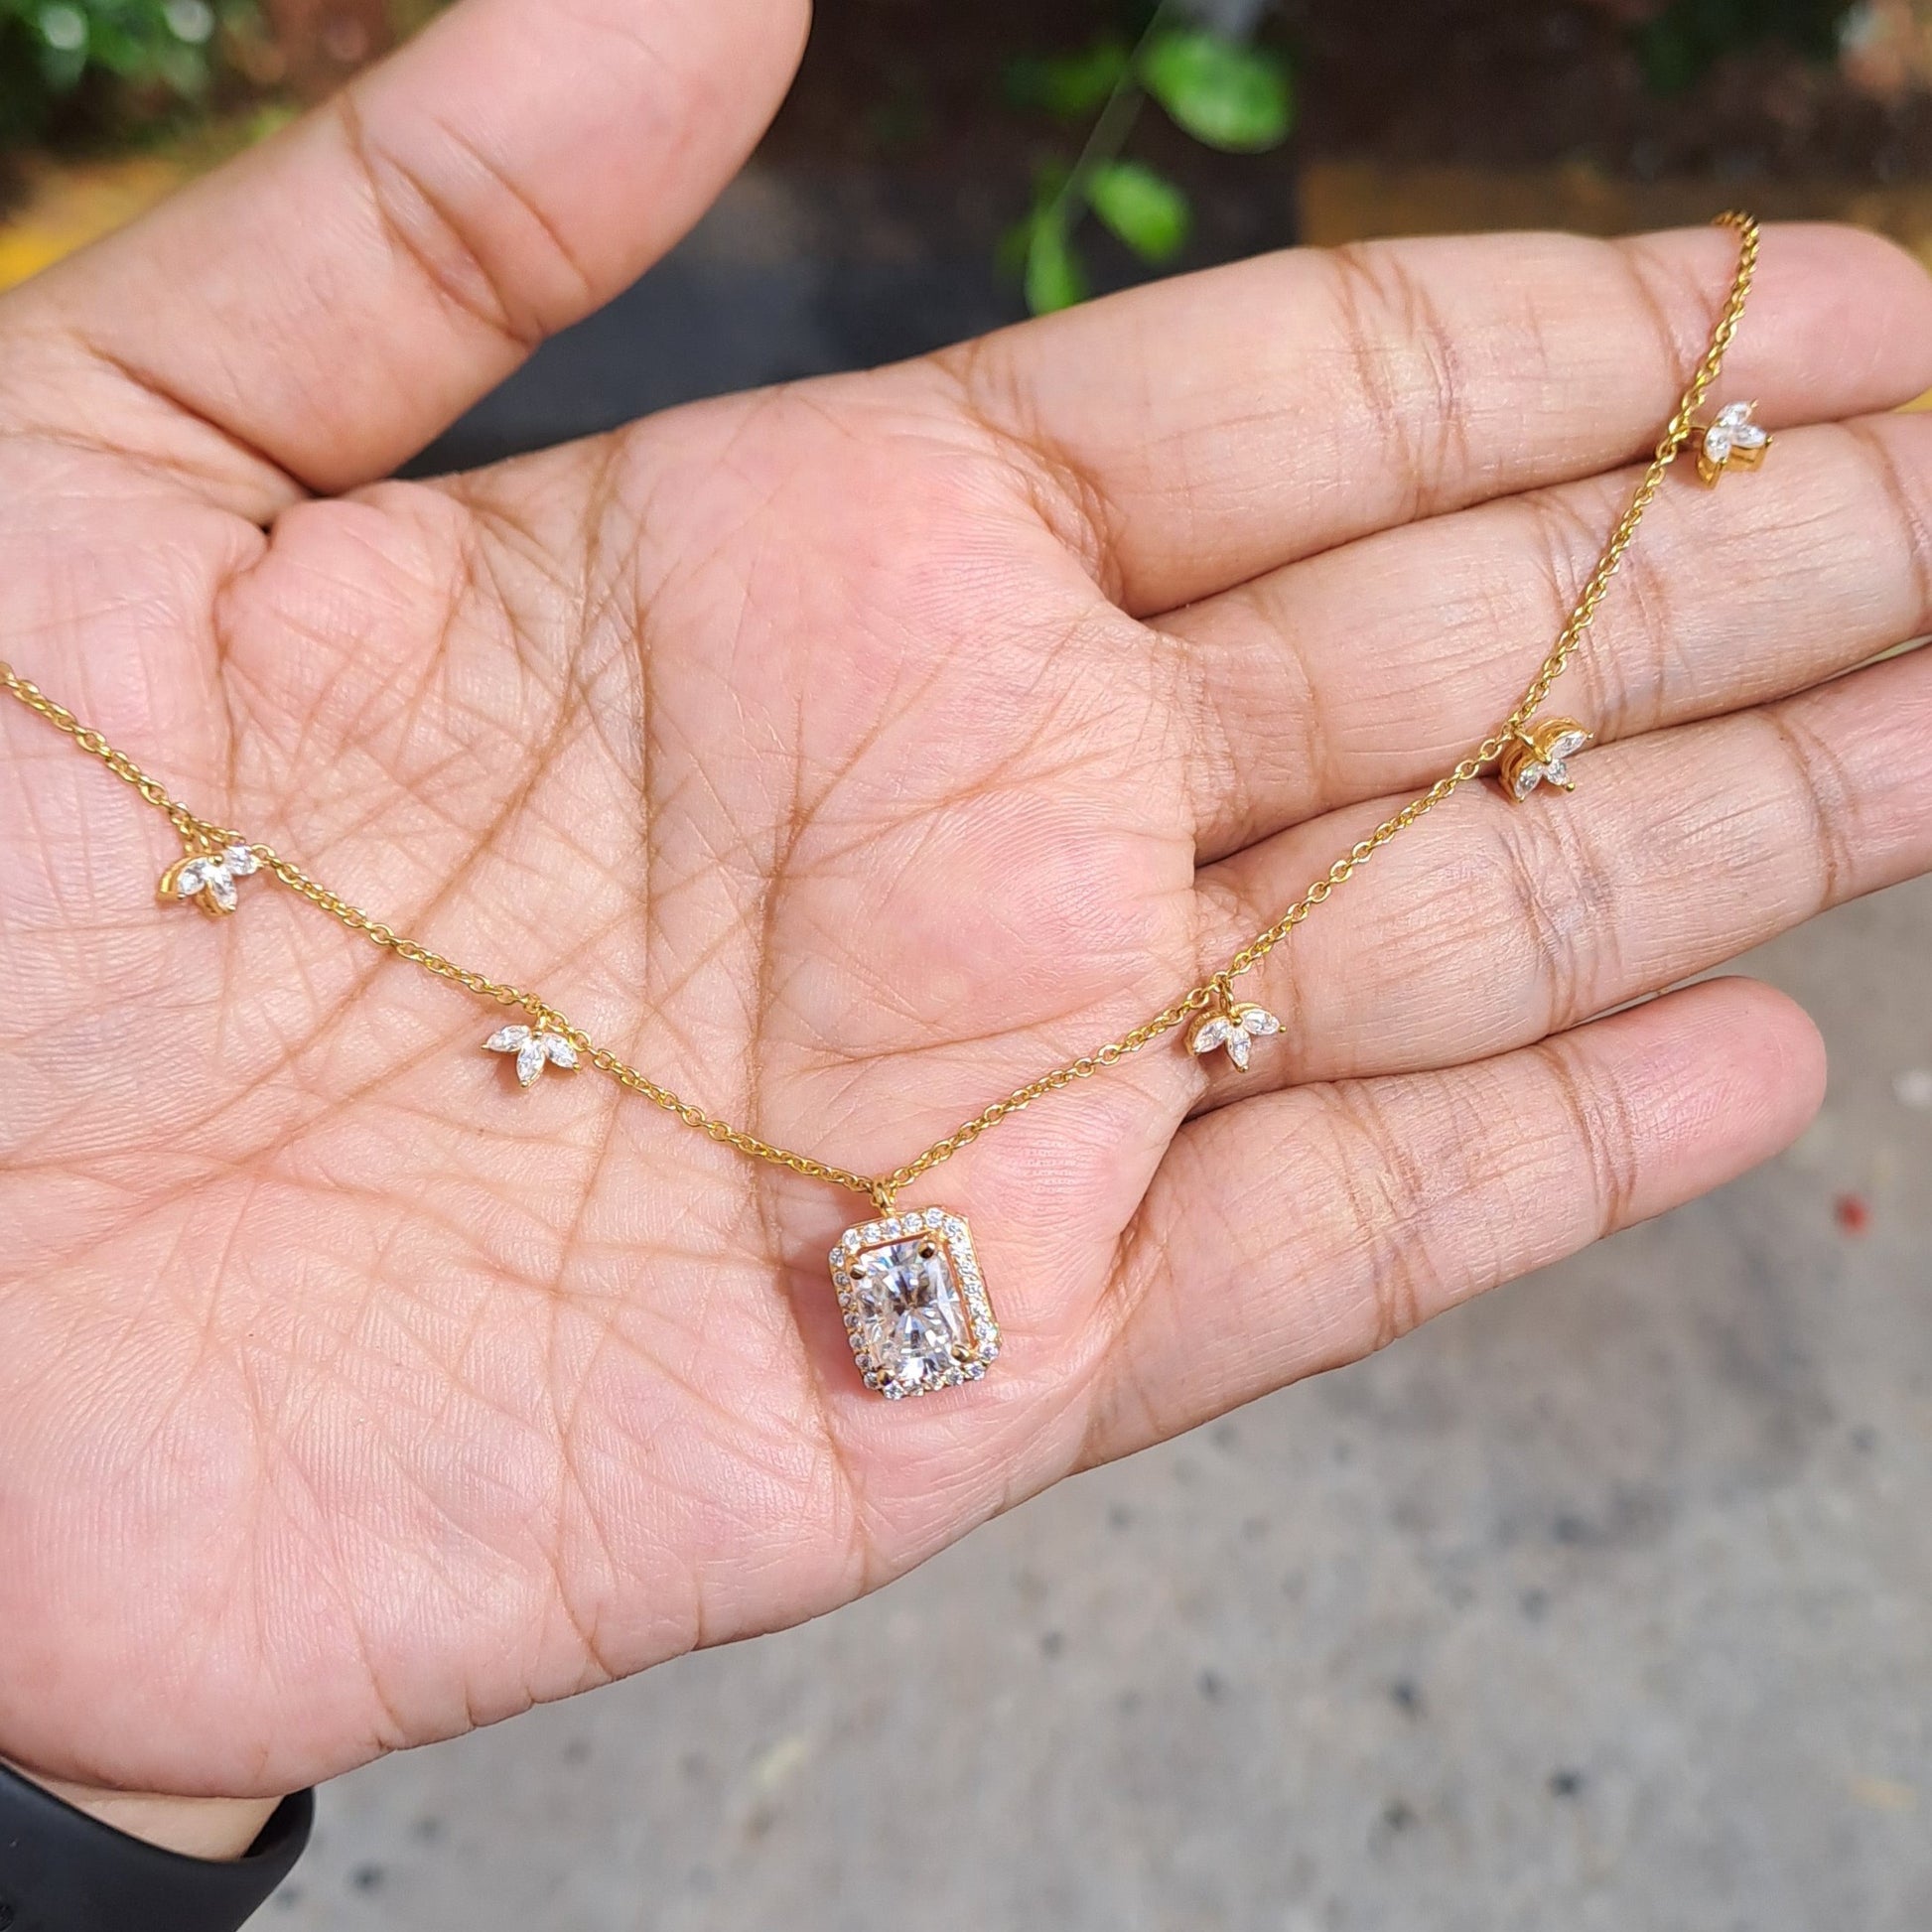 Moissanite Diamond Earring and Pendant